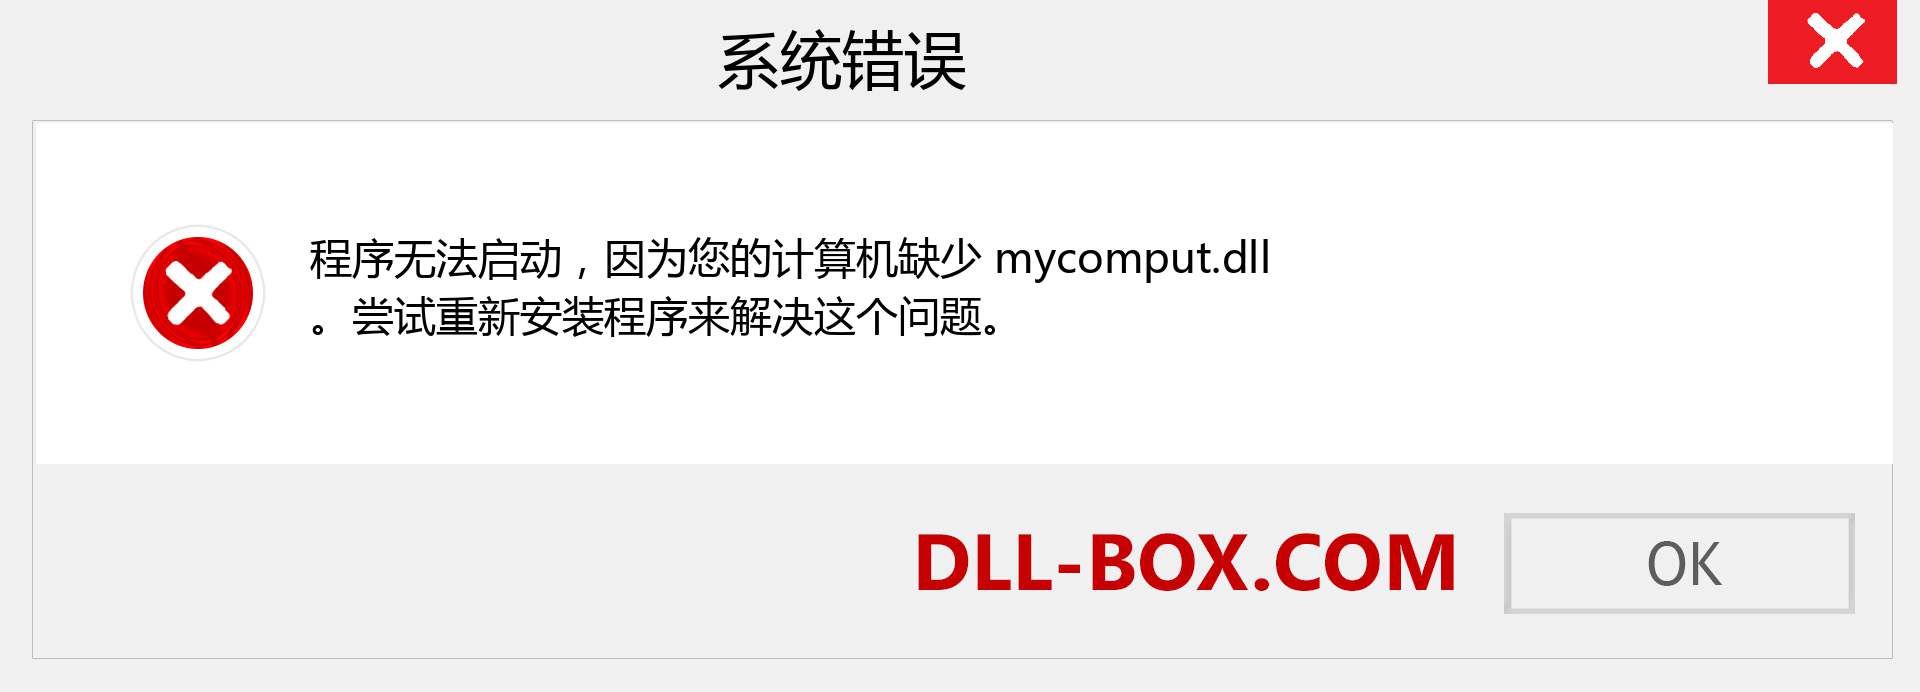 mycomput.dll 文件丢失？。 适用于 Windows 7、8、10 的下载 - 修复 Windows、照片、图像上的 mycomput dll 丢失错误